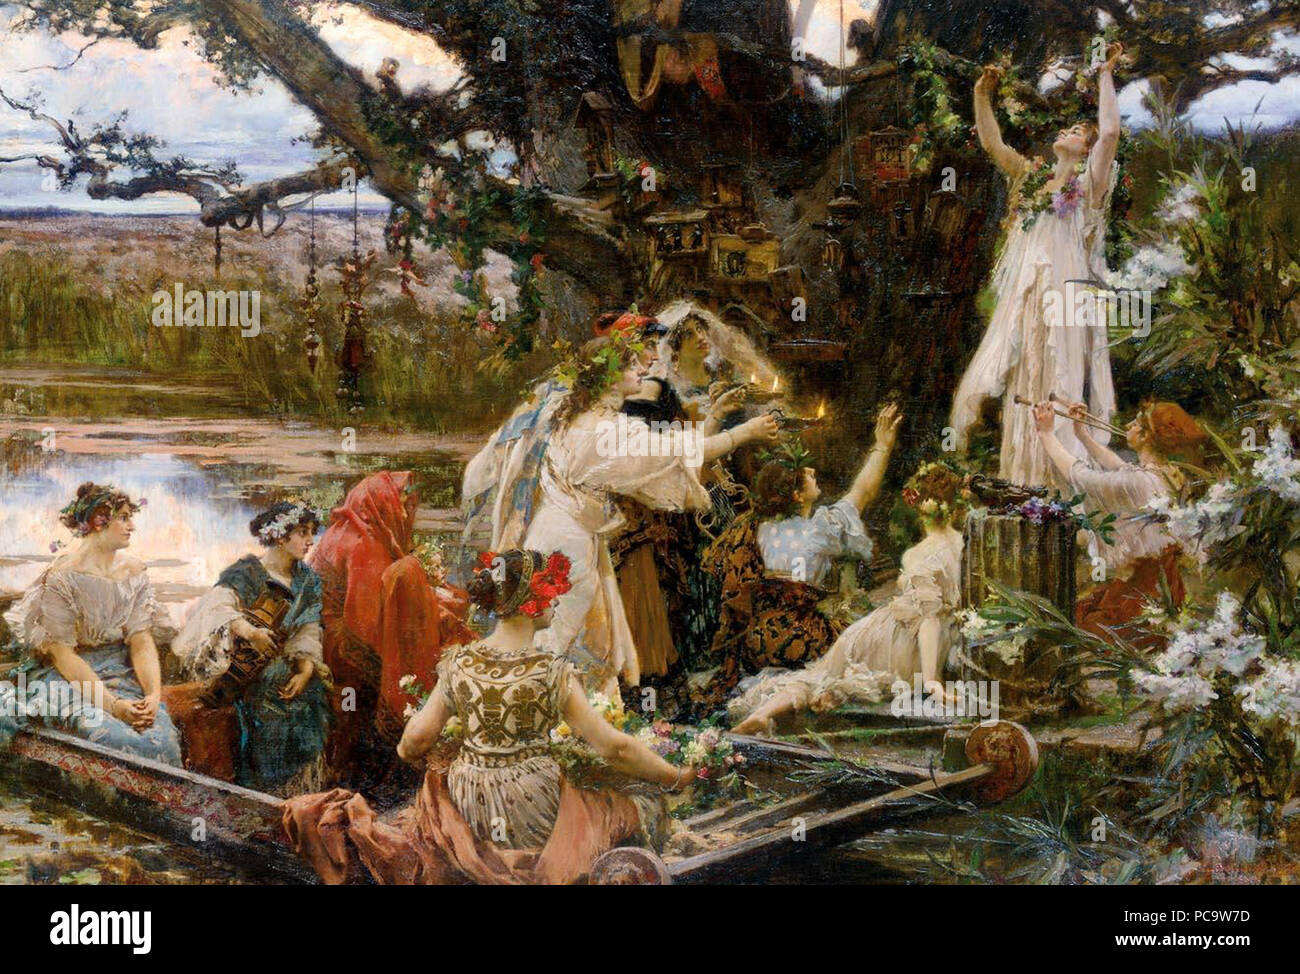 499 PRADILLA - Bajo el árbol consagrado a Ceres (Colección particular, 1903. Óleo sobre lienzo, 77,5 x 111 cm) Stock Photo